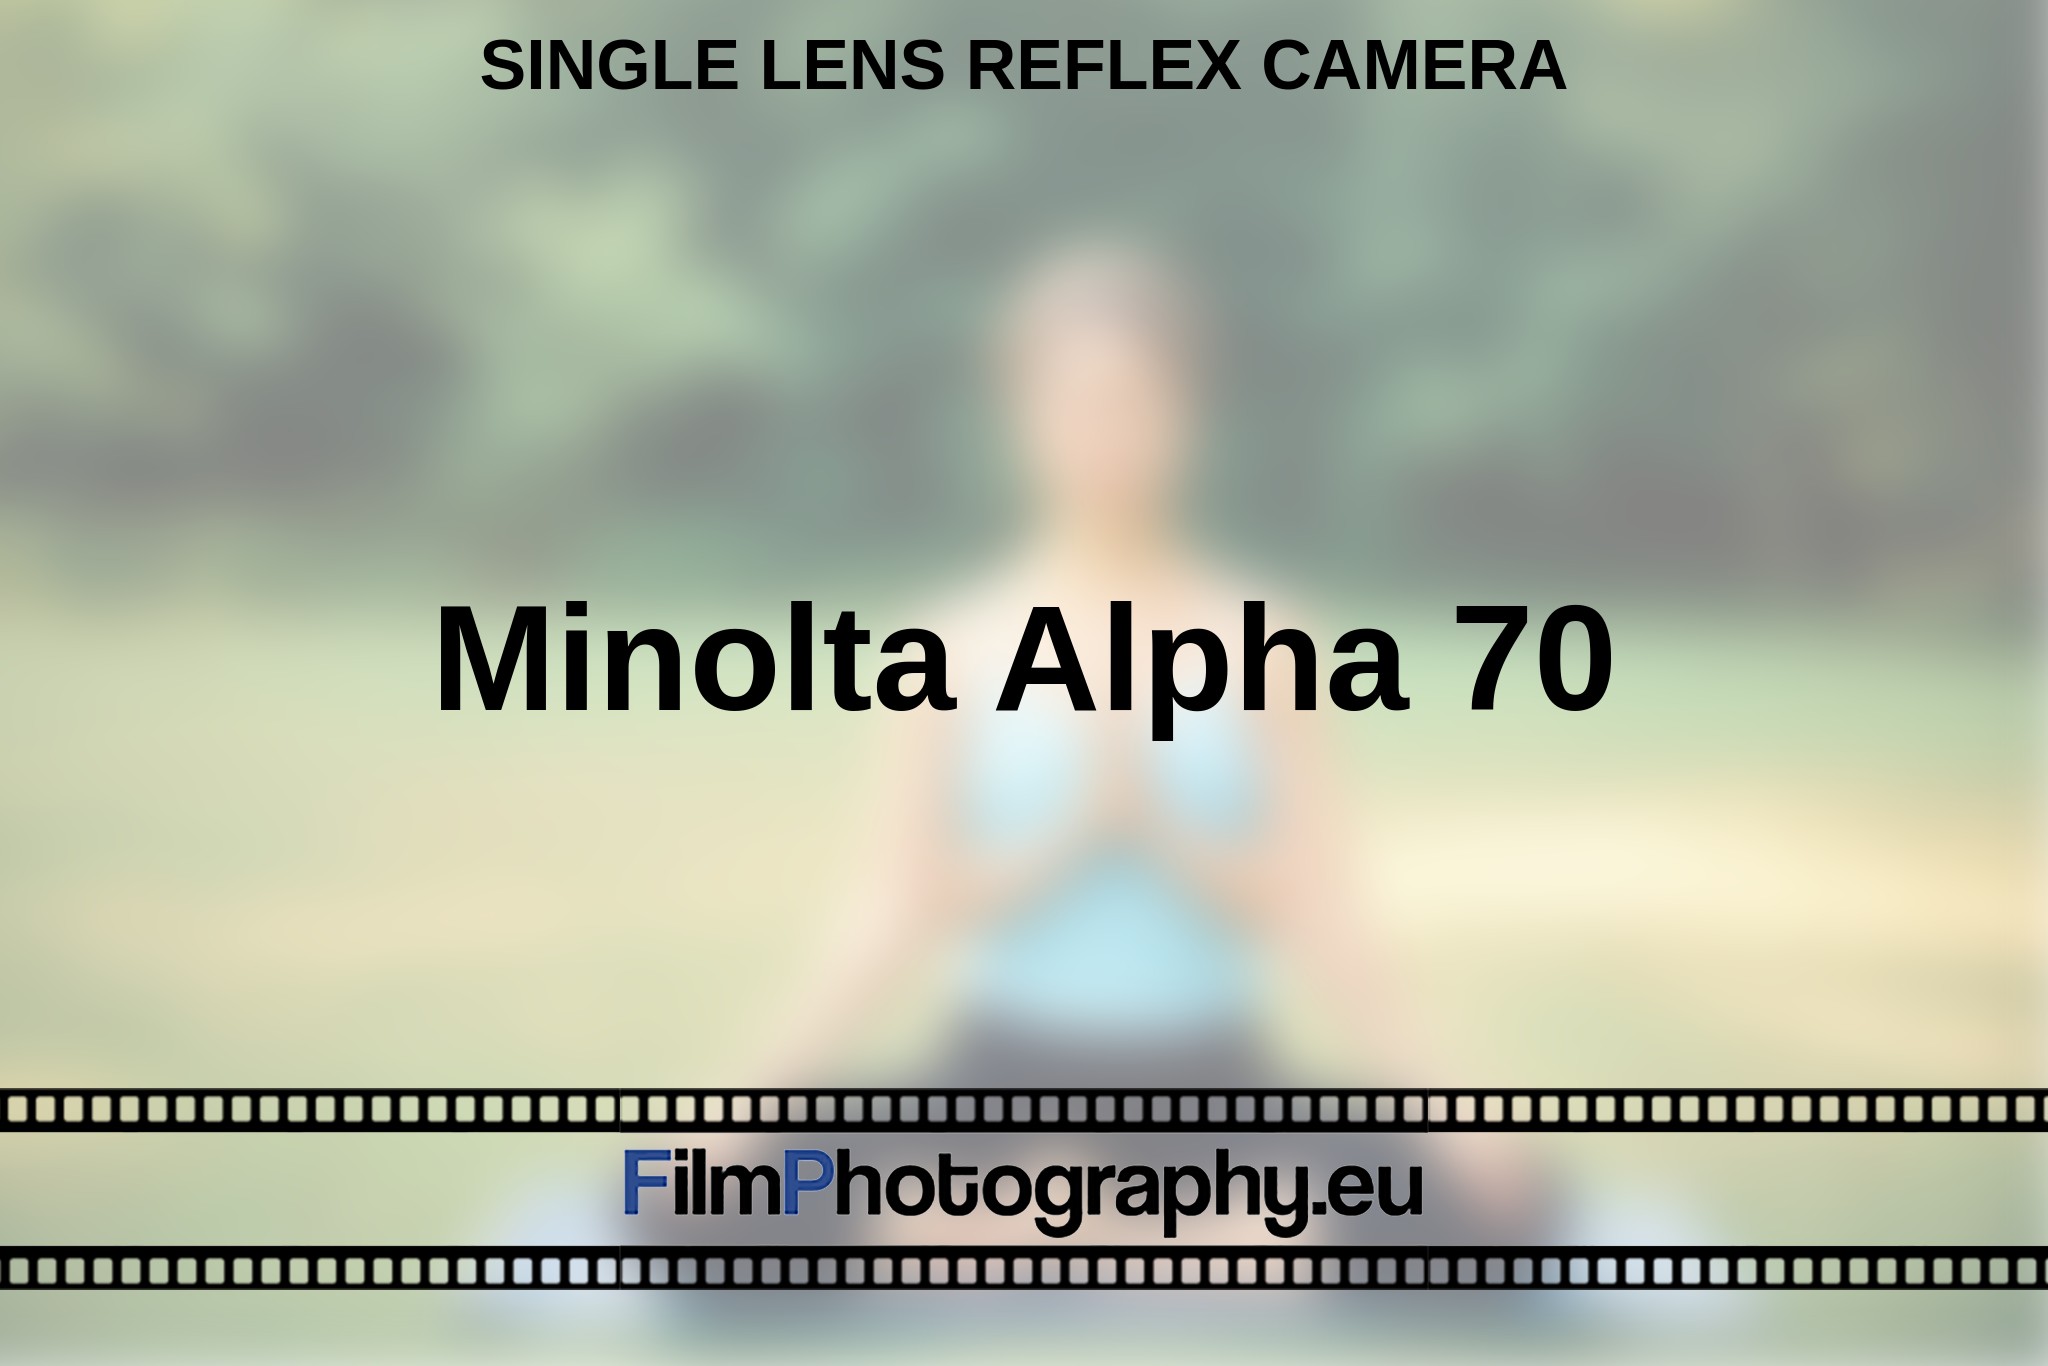 minolta-alpha-70-single-lens-reflex-camera-en-bnv.jpg